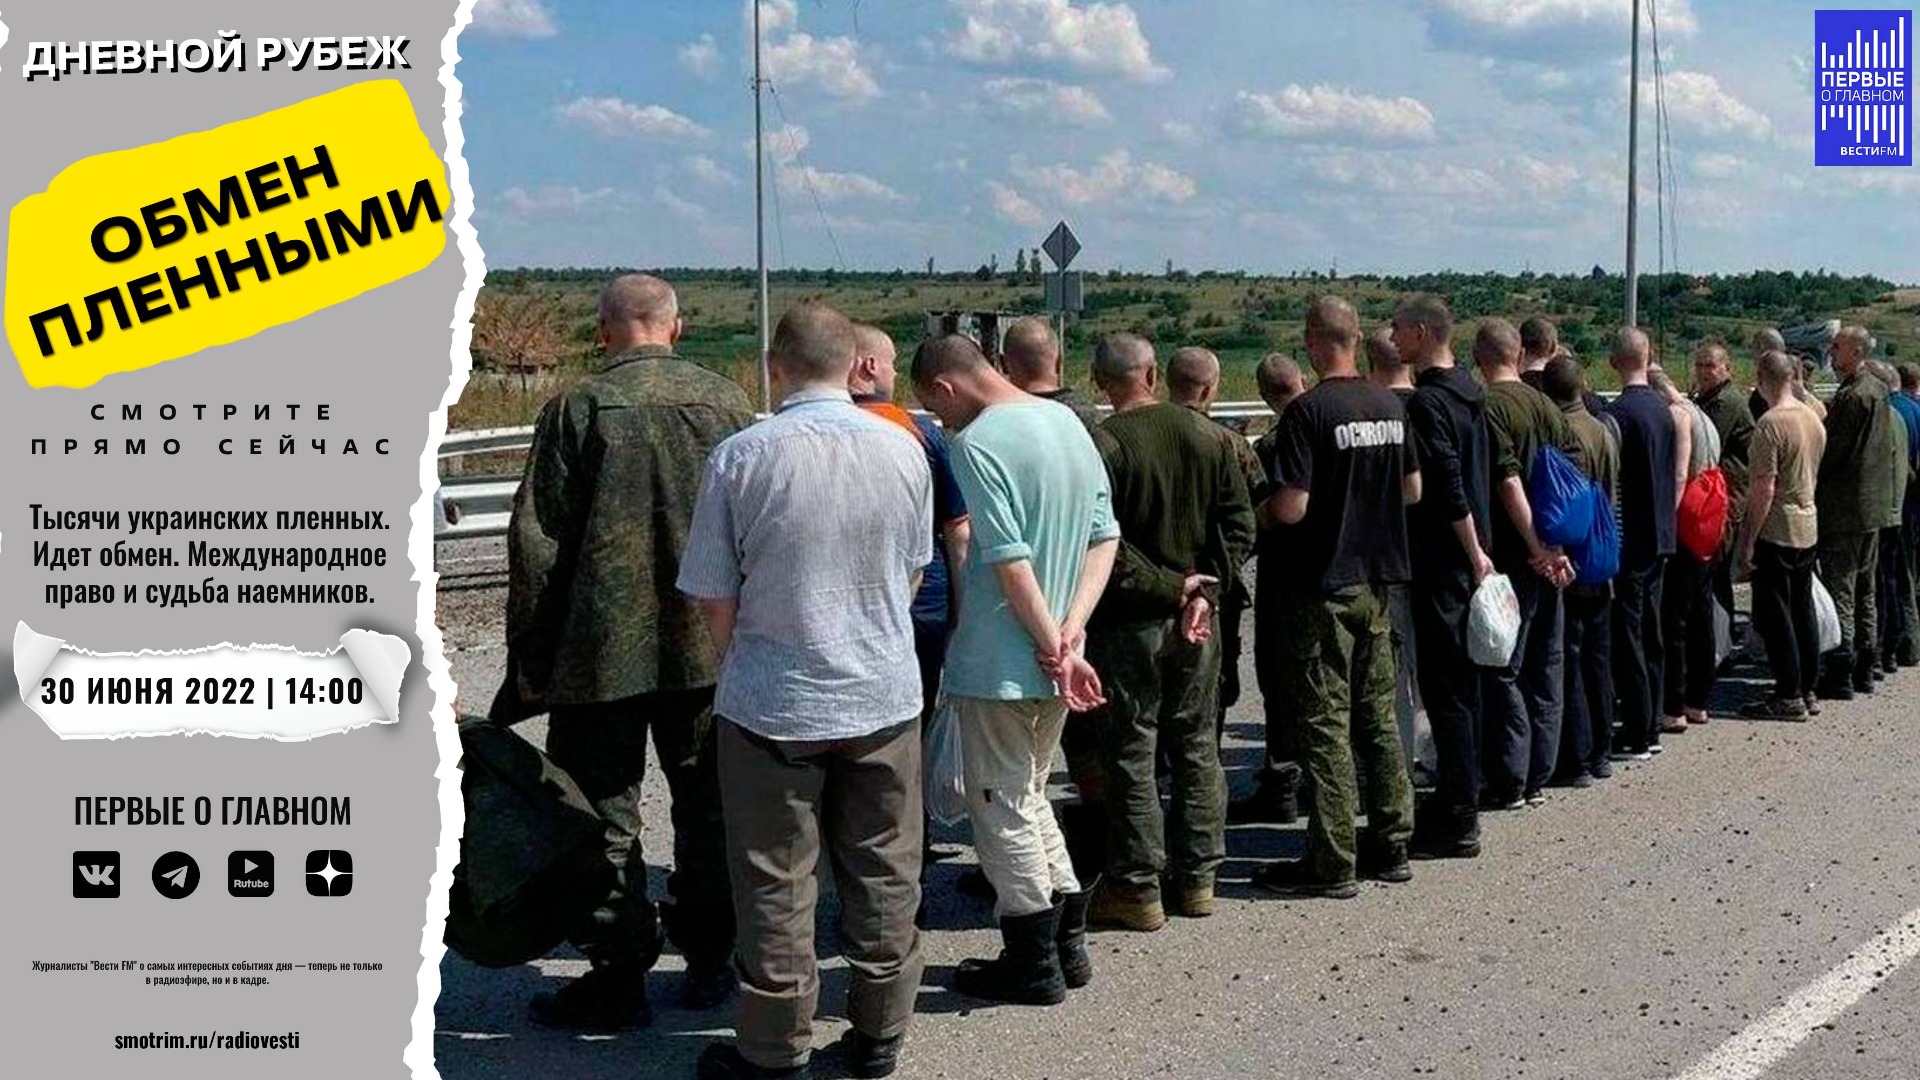 Списки на обмен пленными на украине. Украинские военнопленные. Обмен пленными.